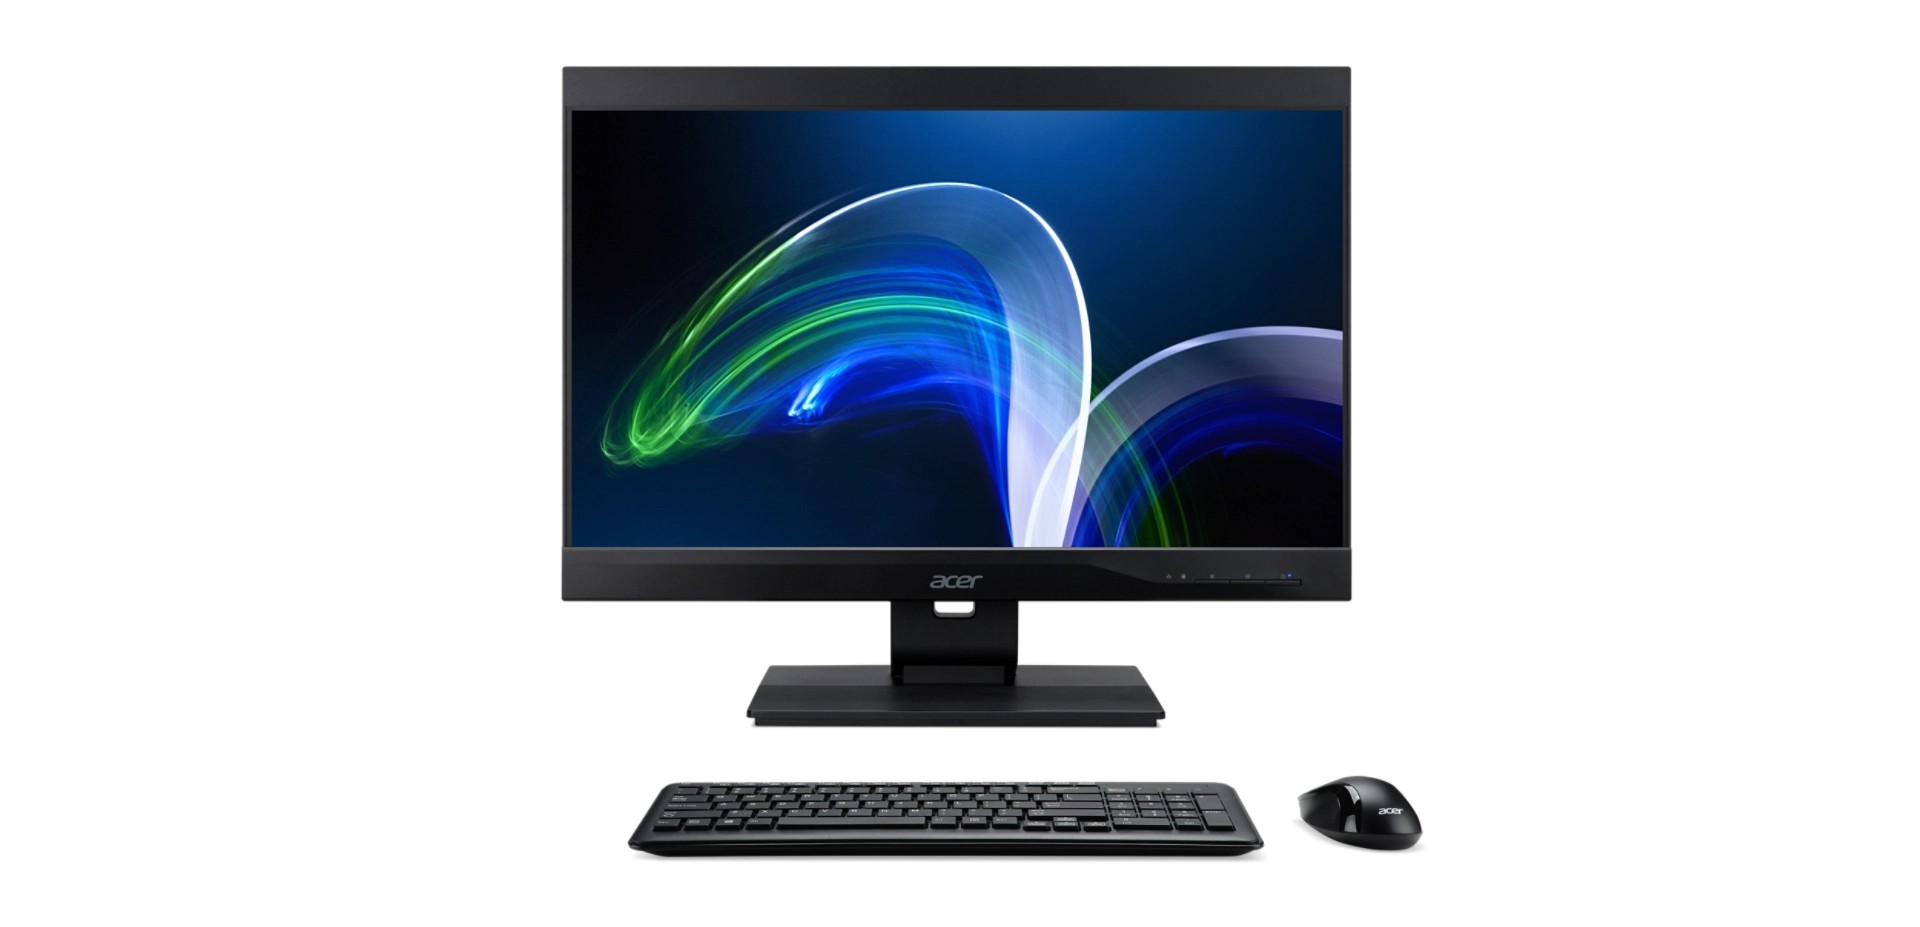 All-in-One PC 23.8" Acer Veriton Z4880G / Intel Core i5 / 8GB / 256GB SSD / Win10Pro / Black